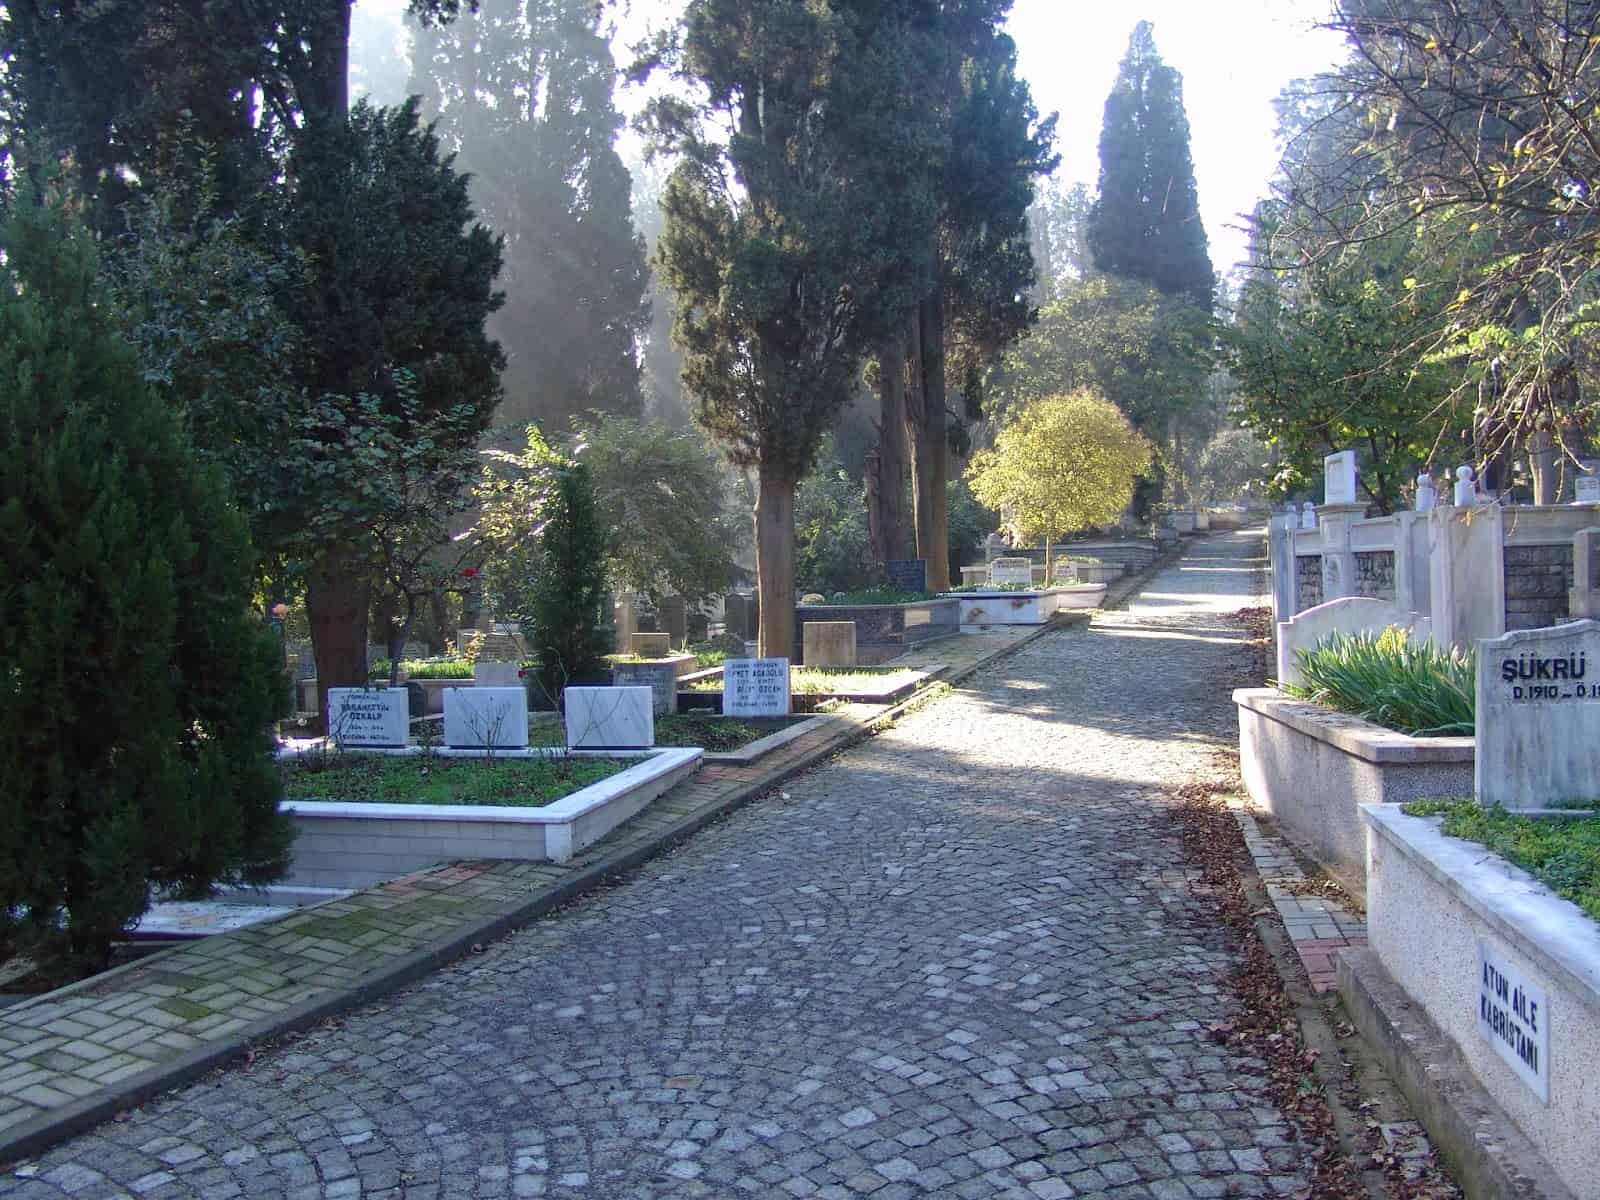 Karacaahmet Mezarlığı in Üsküdar, Istanbul, Turkey